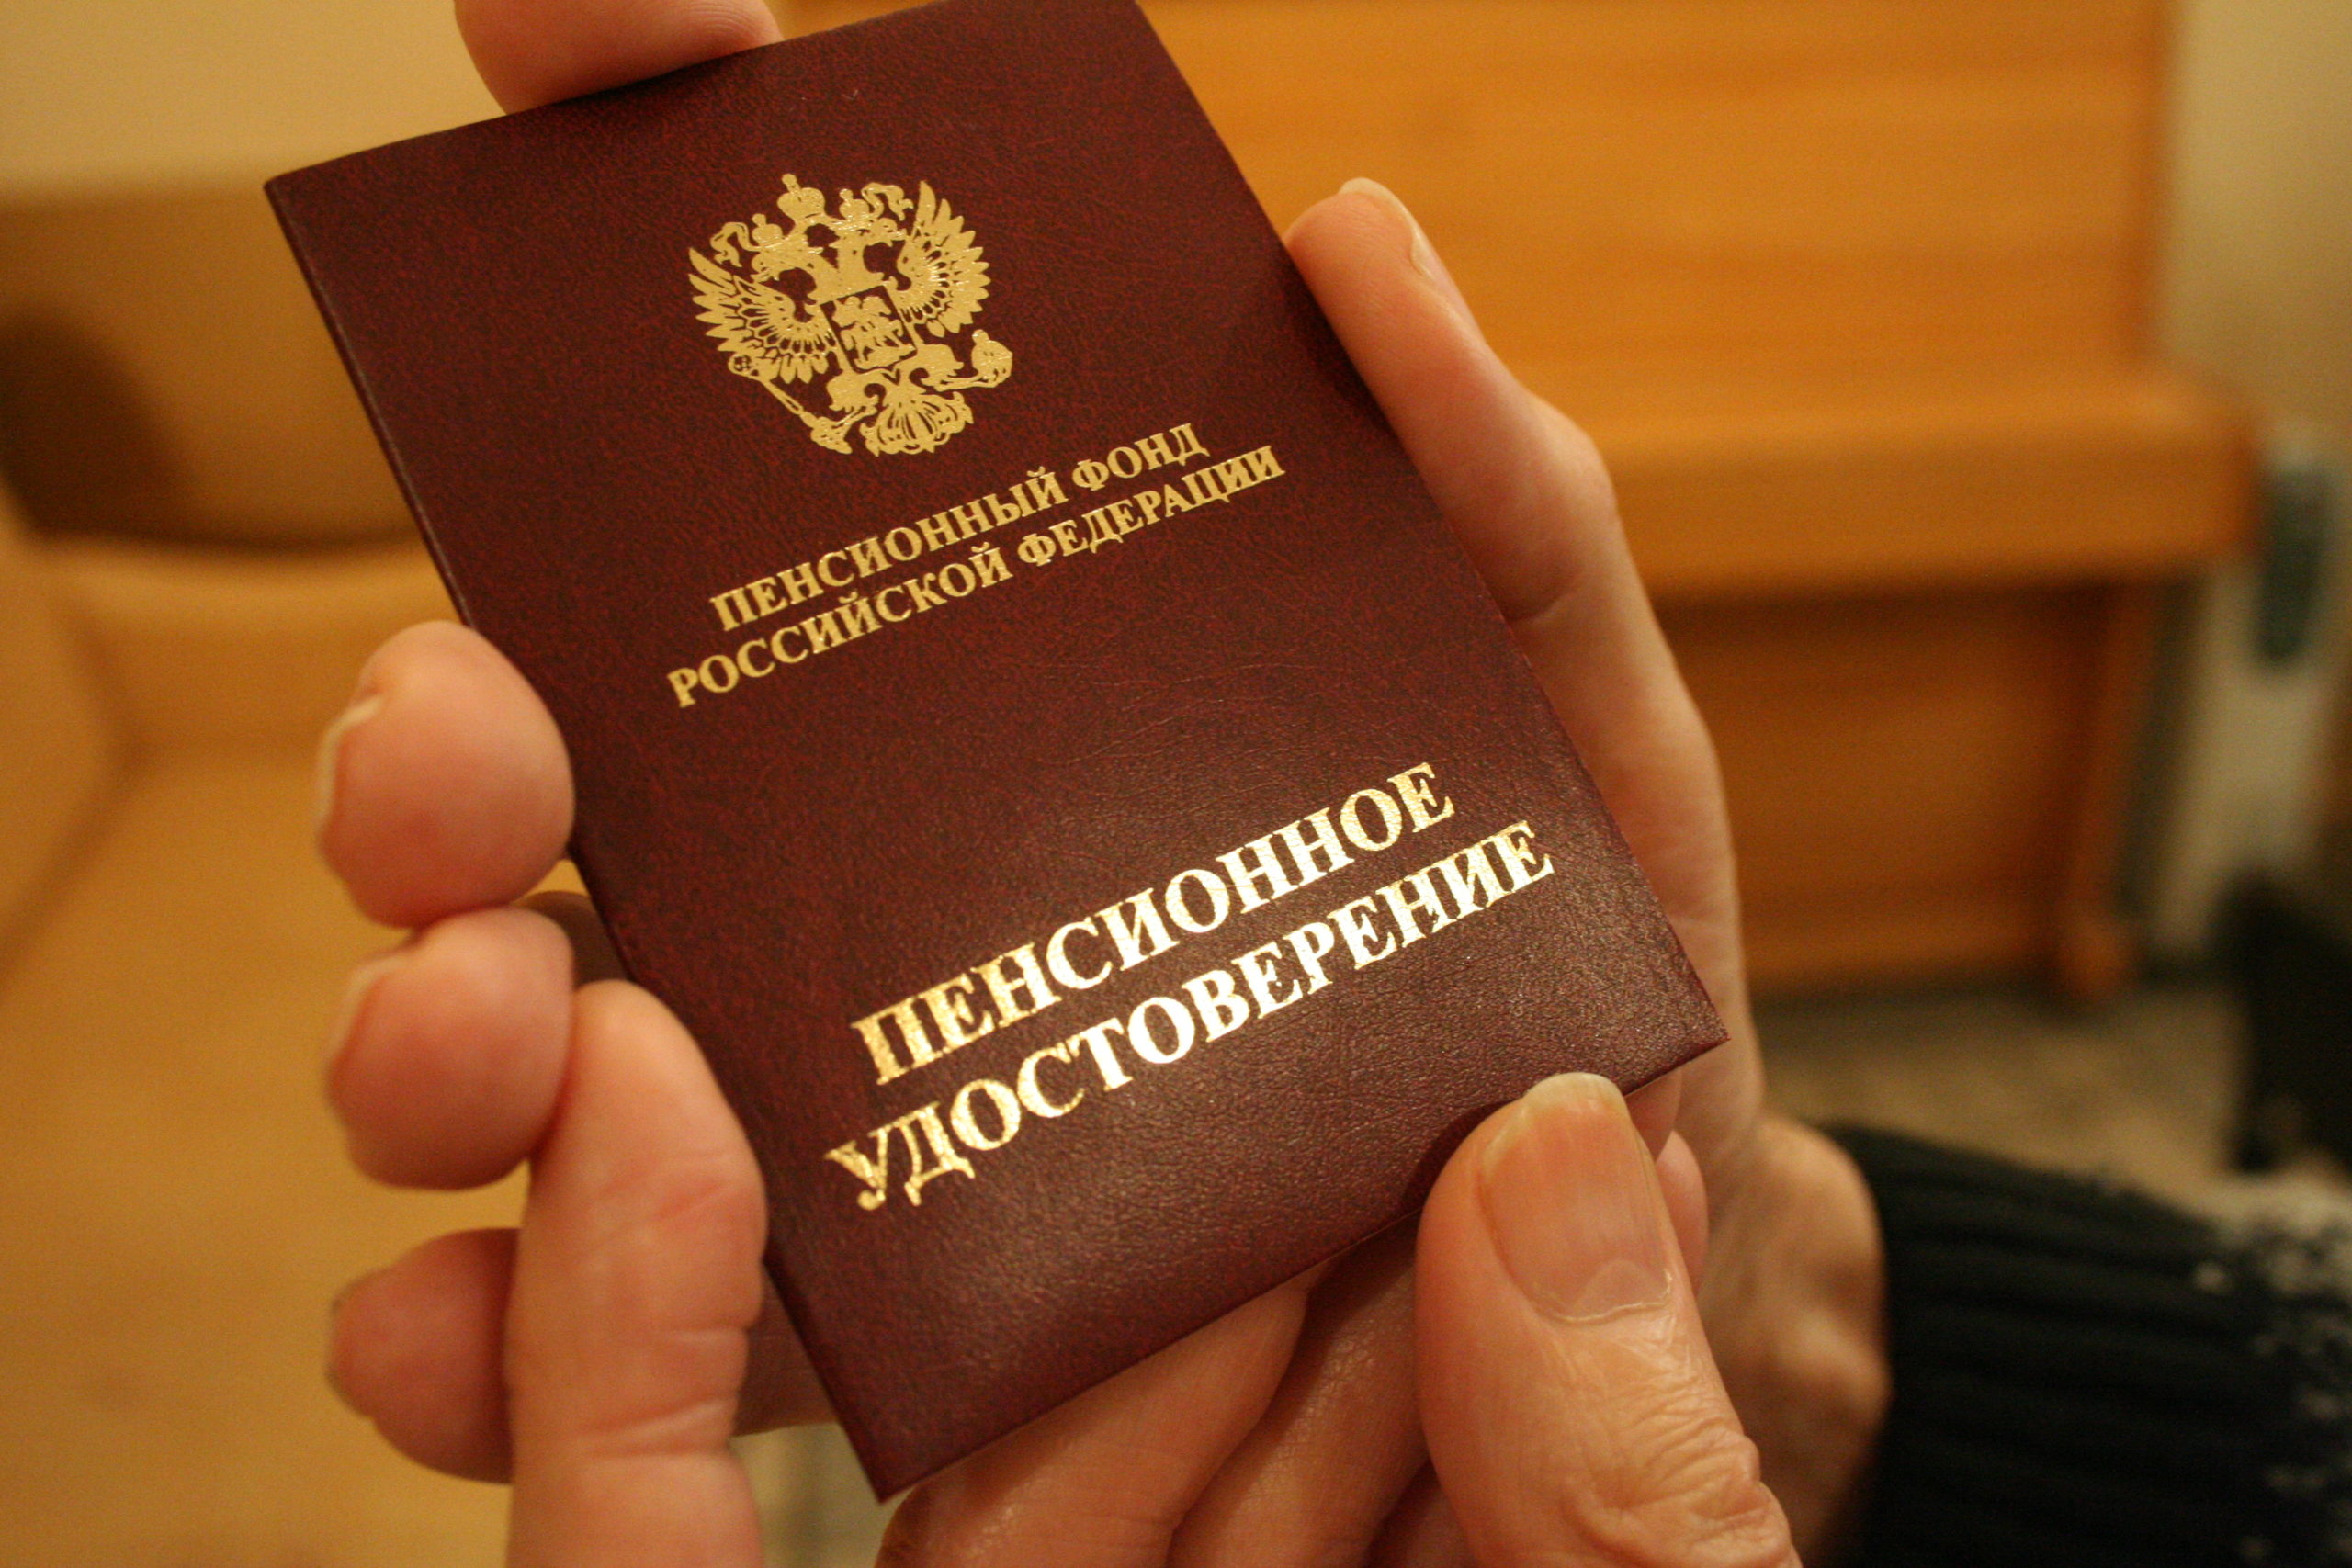 Получение пенсии при получении гражданства РФ